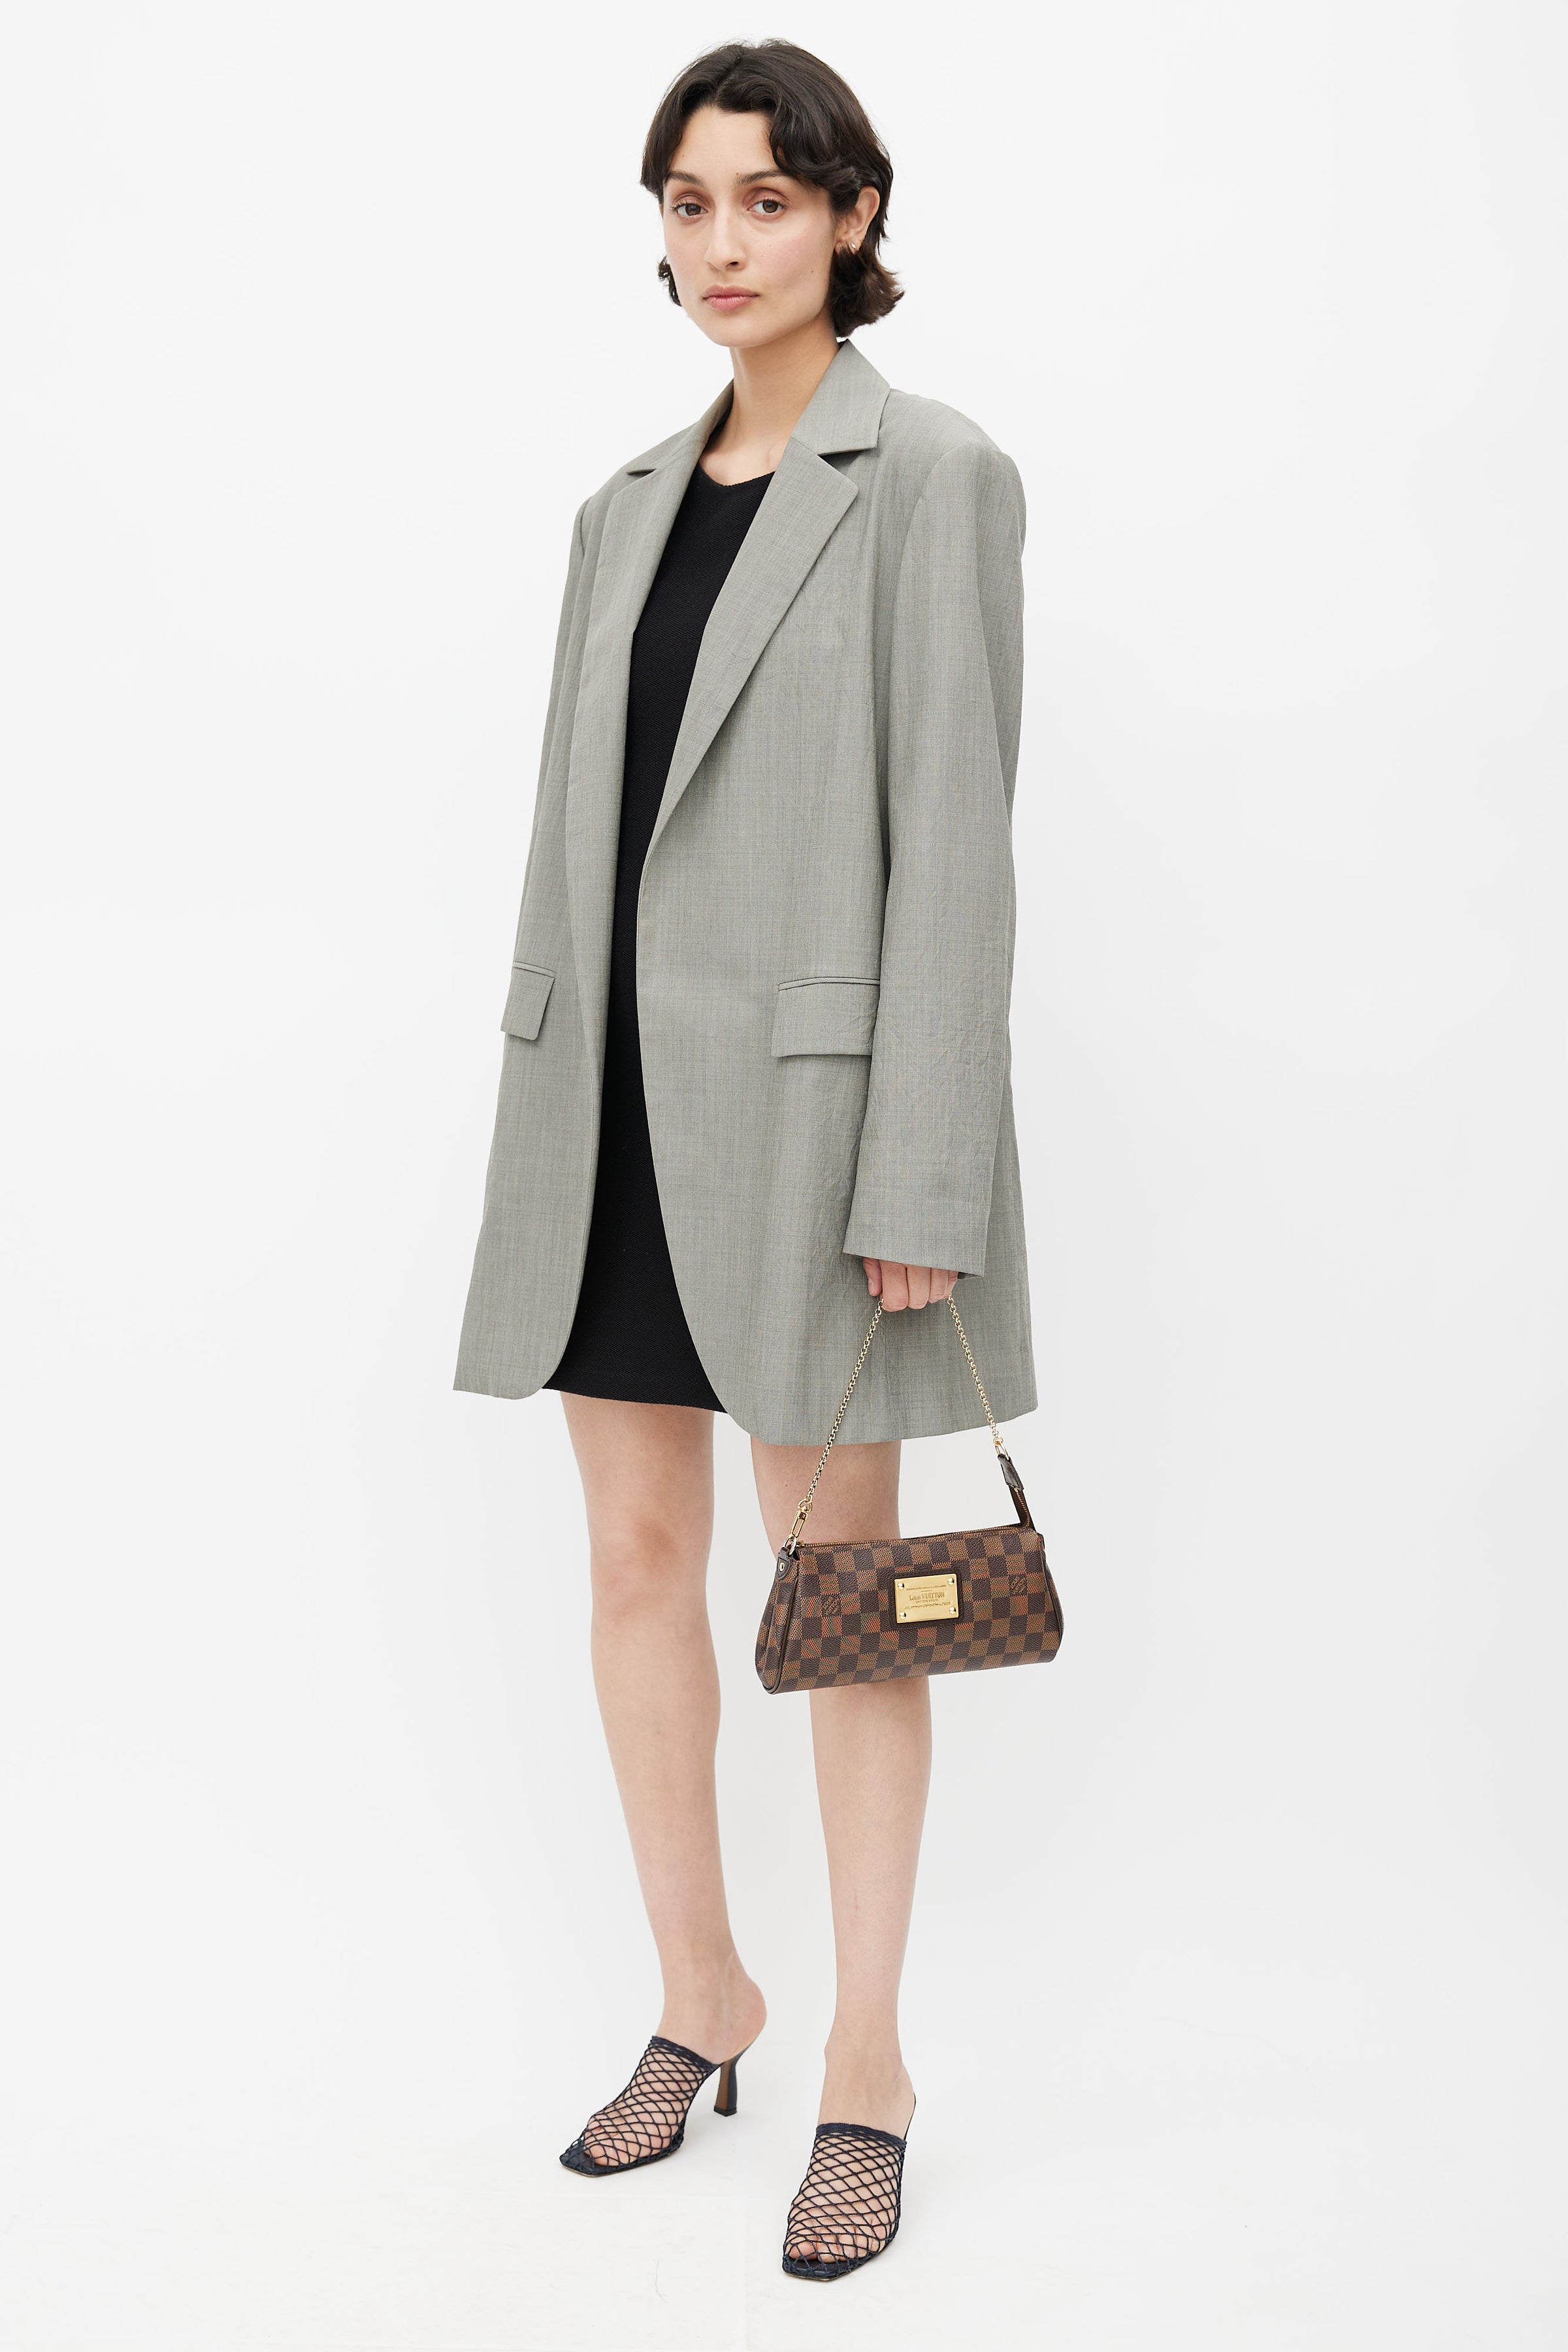 Louis Vuitton // 2012 Brown Damier Ebene Eva Crossbody Bag – VSP Consignment